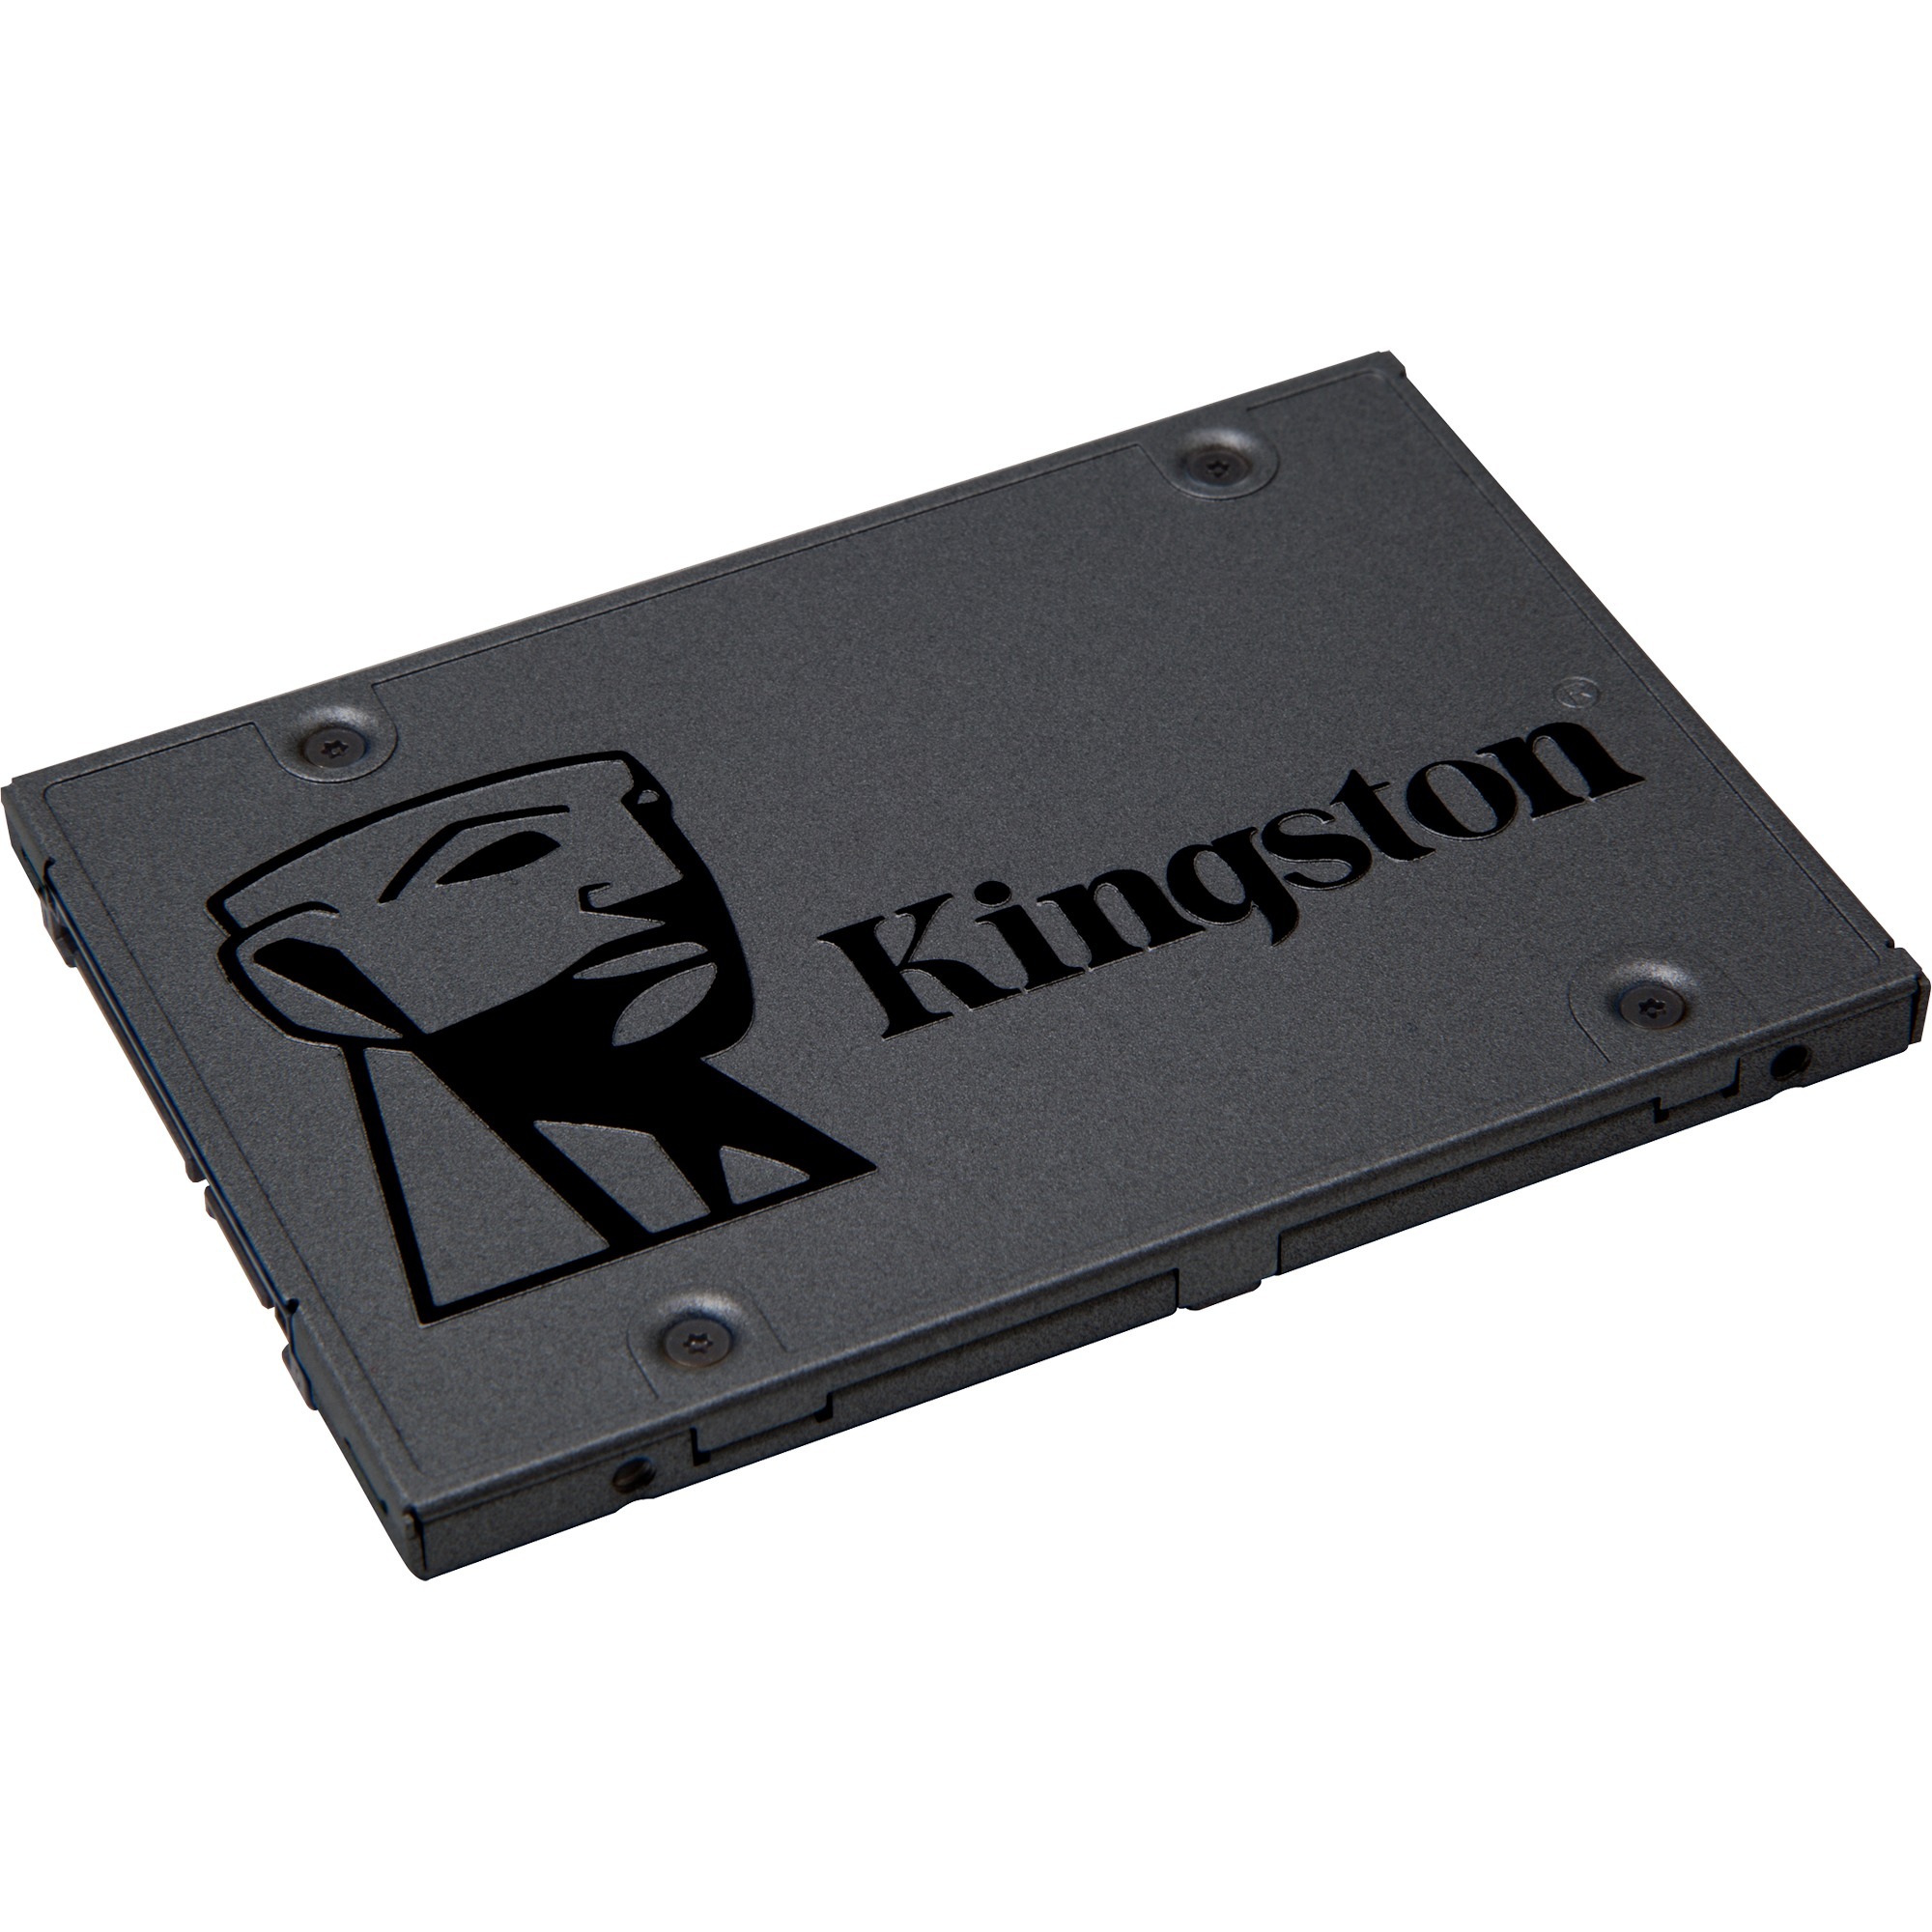 Image of Alternate - A400 240 GB, SSD online einkaufen bei Alternate